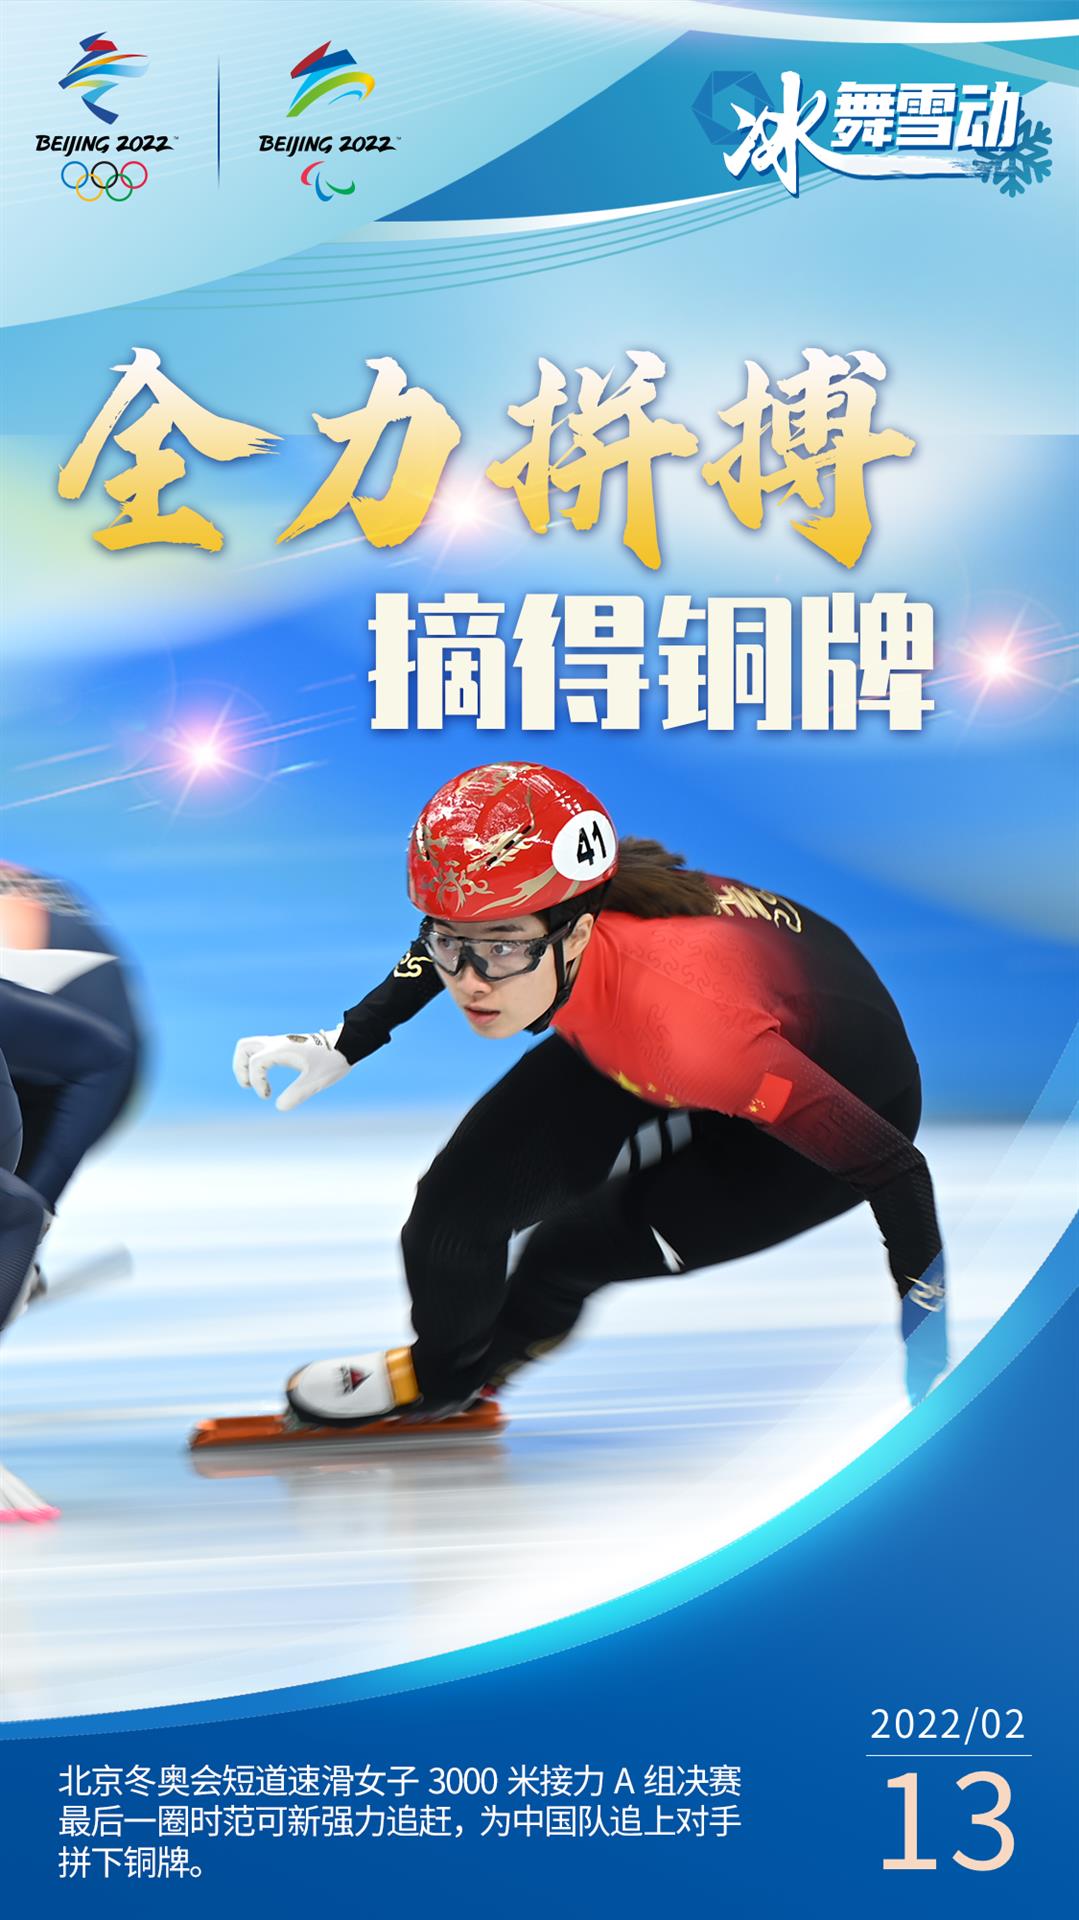 【冬奥会海报集锦】短道速滑女子3000米接力摘铜